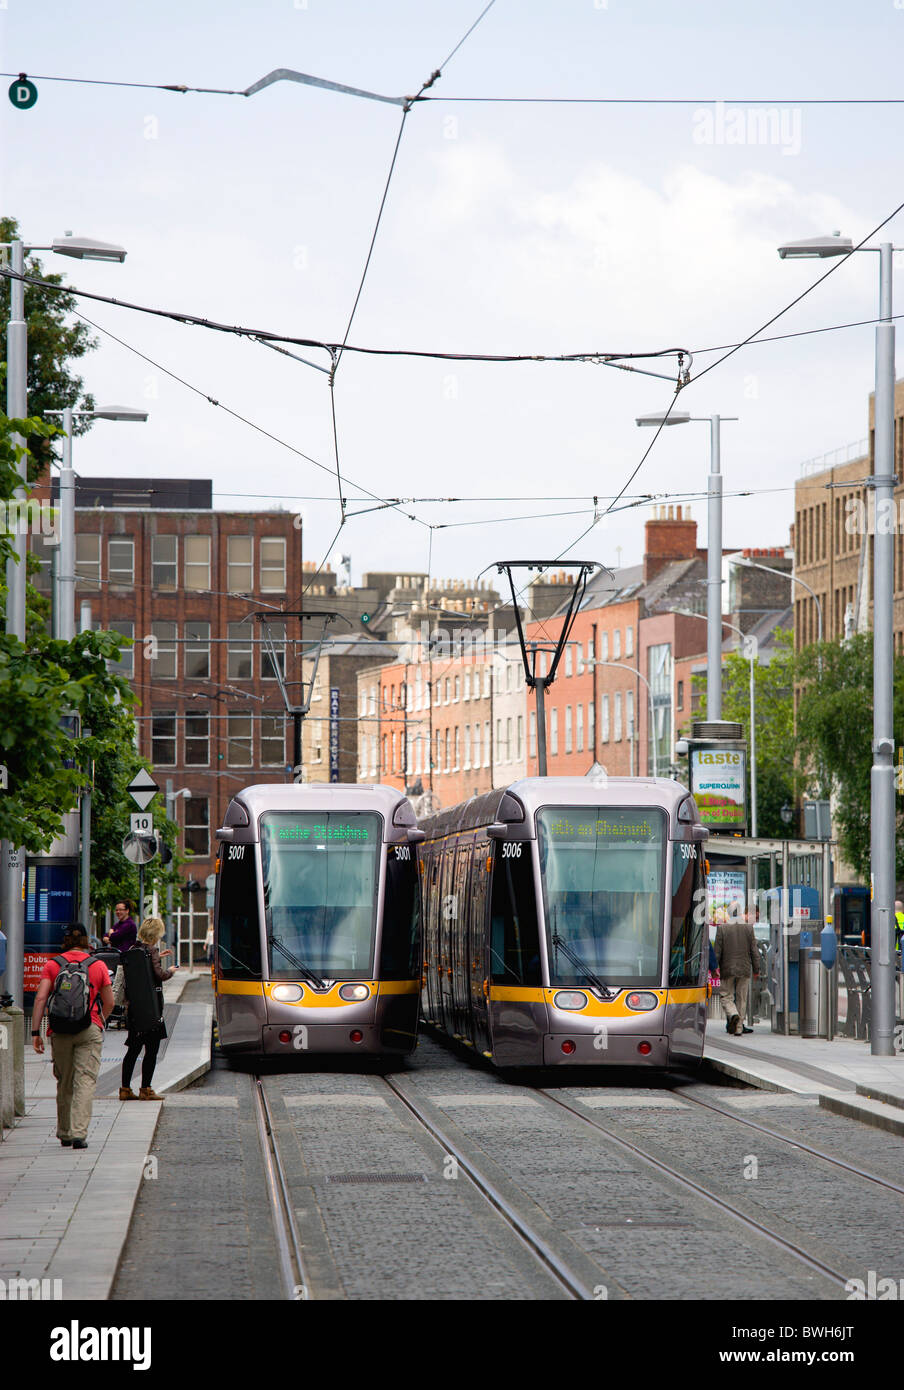 L'Irlande, comté de Dublin, la ville de Dublin, le Luas light rail tramways à l'arrêt à côté de Saint Stephen's Green avec les gens. Banque D'Images